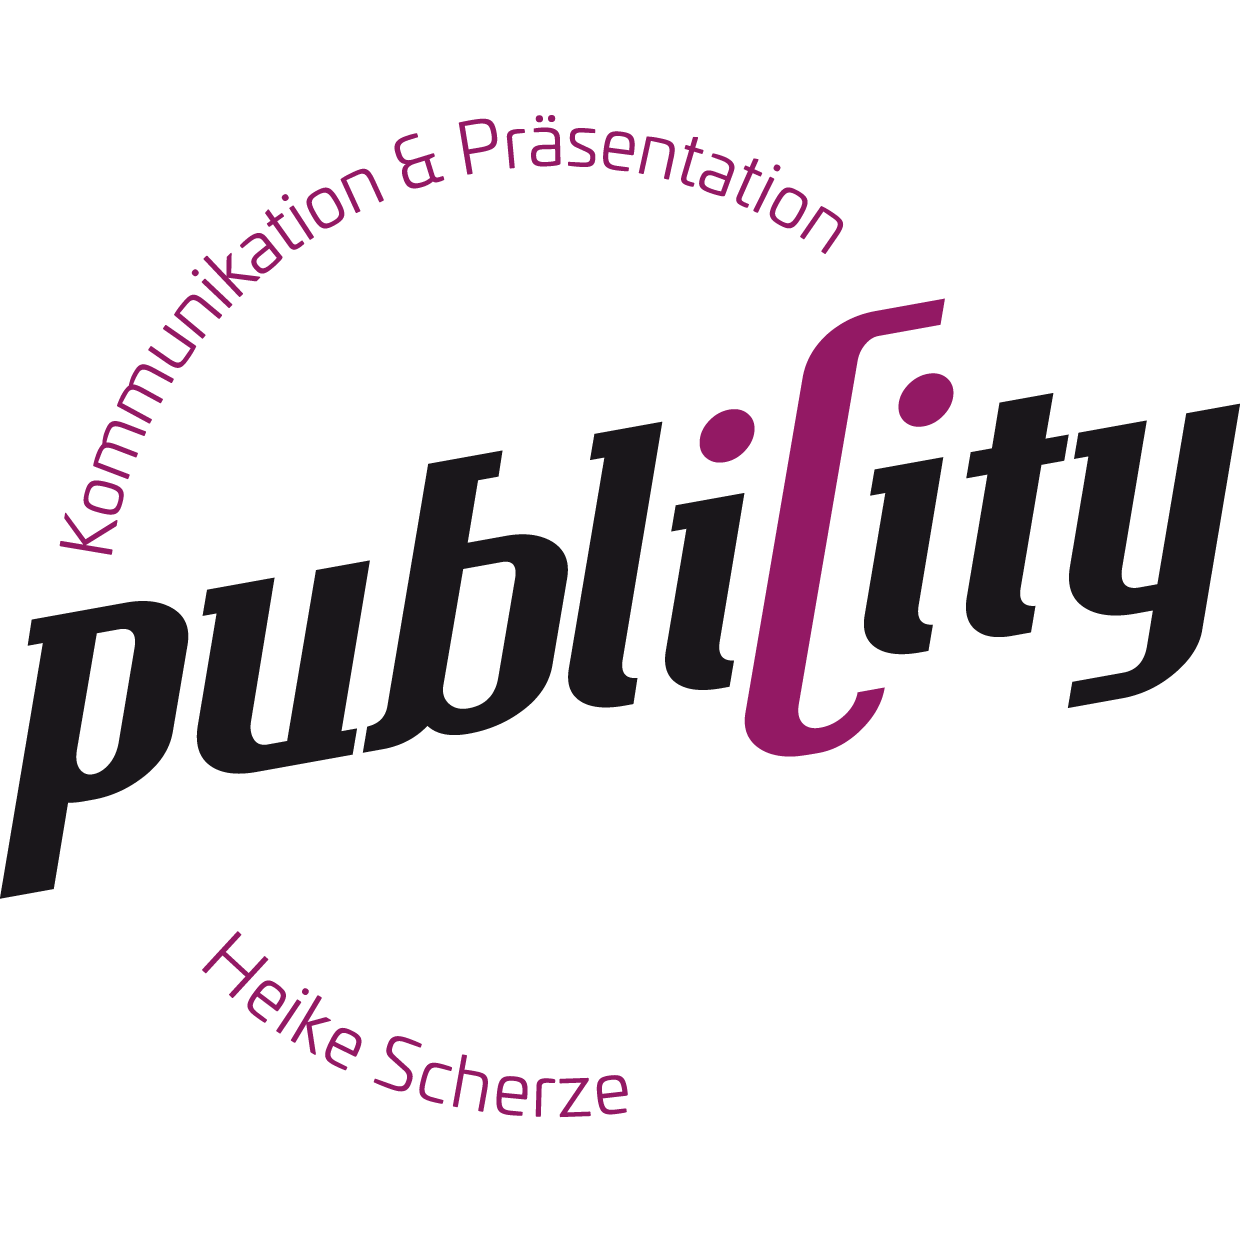 Logo von publiCity.design in schwarz und lila